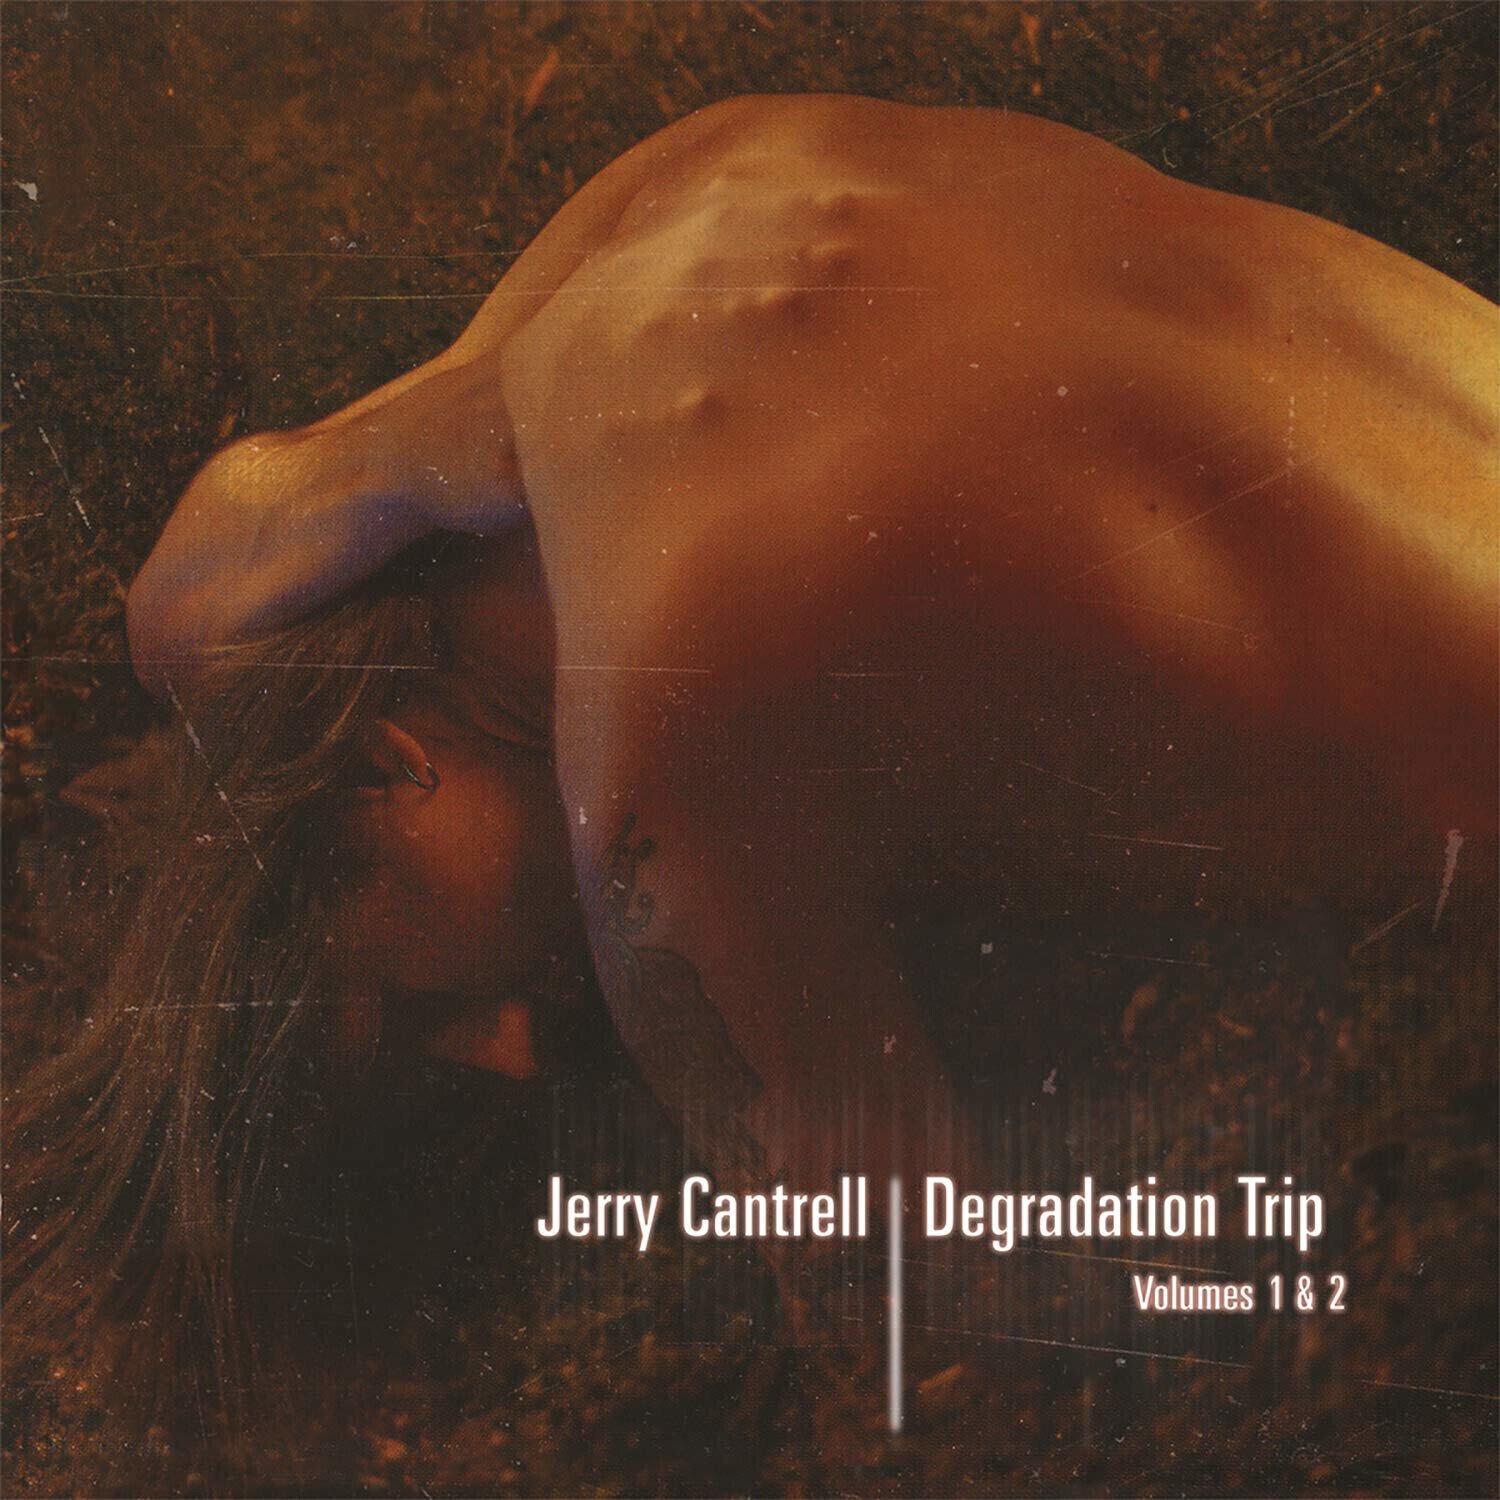 Schallplatte Jerry Cantrell - Degradation Trip 1&2 (4 LP)